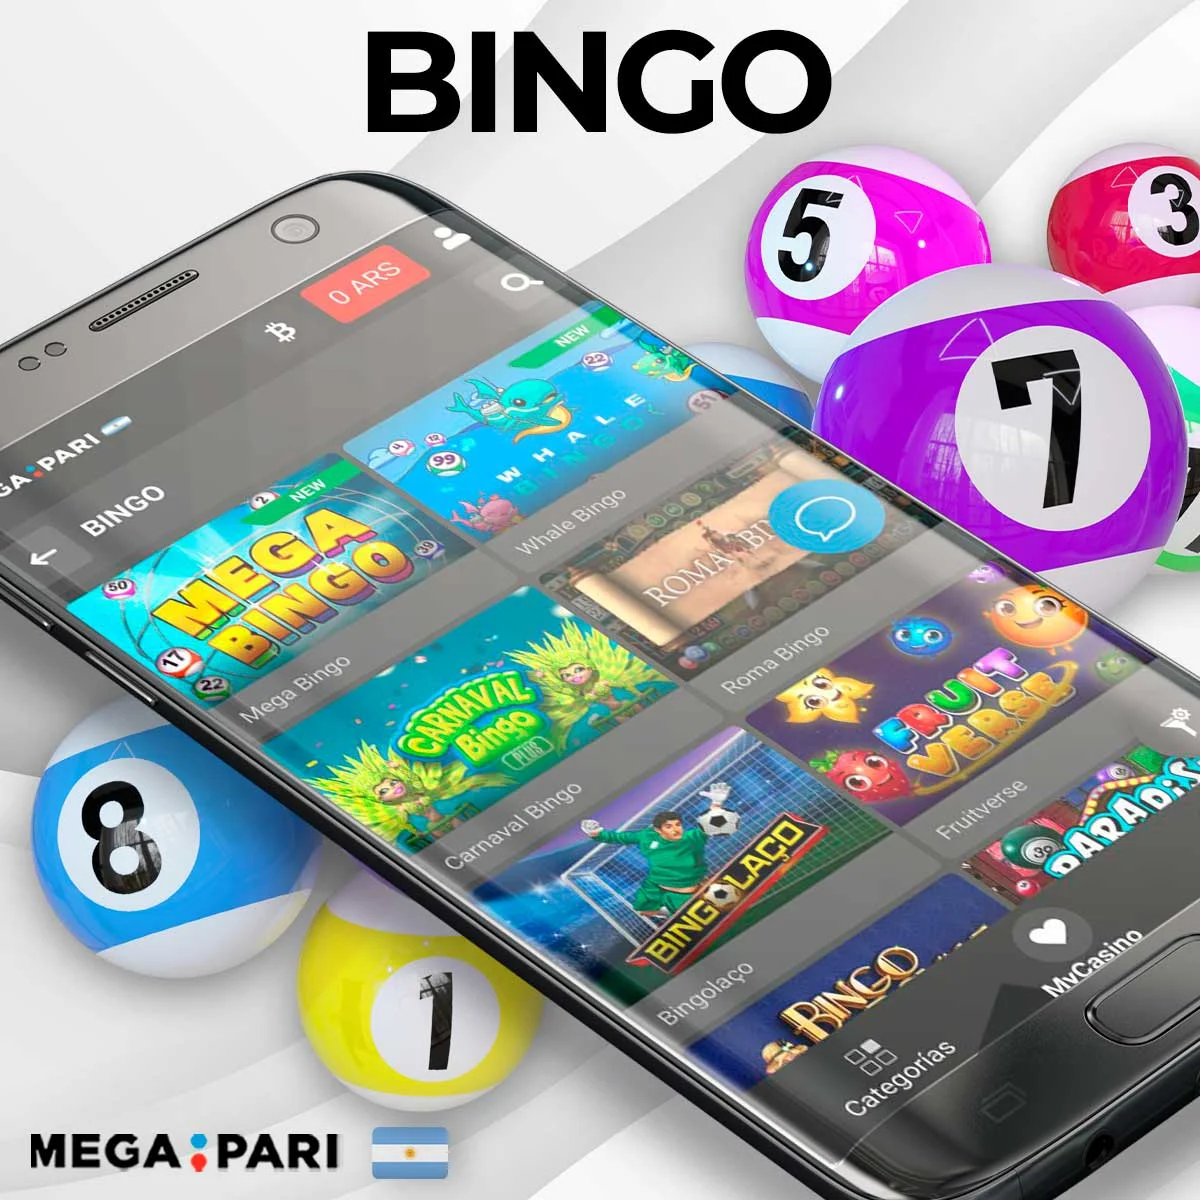 Acerca de los juegos de bingo en la plataforma Megapari